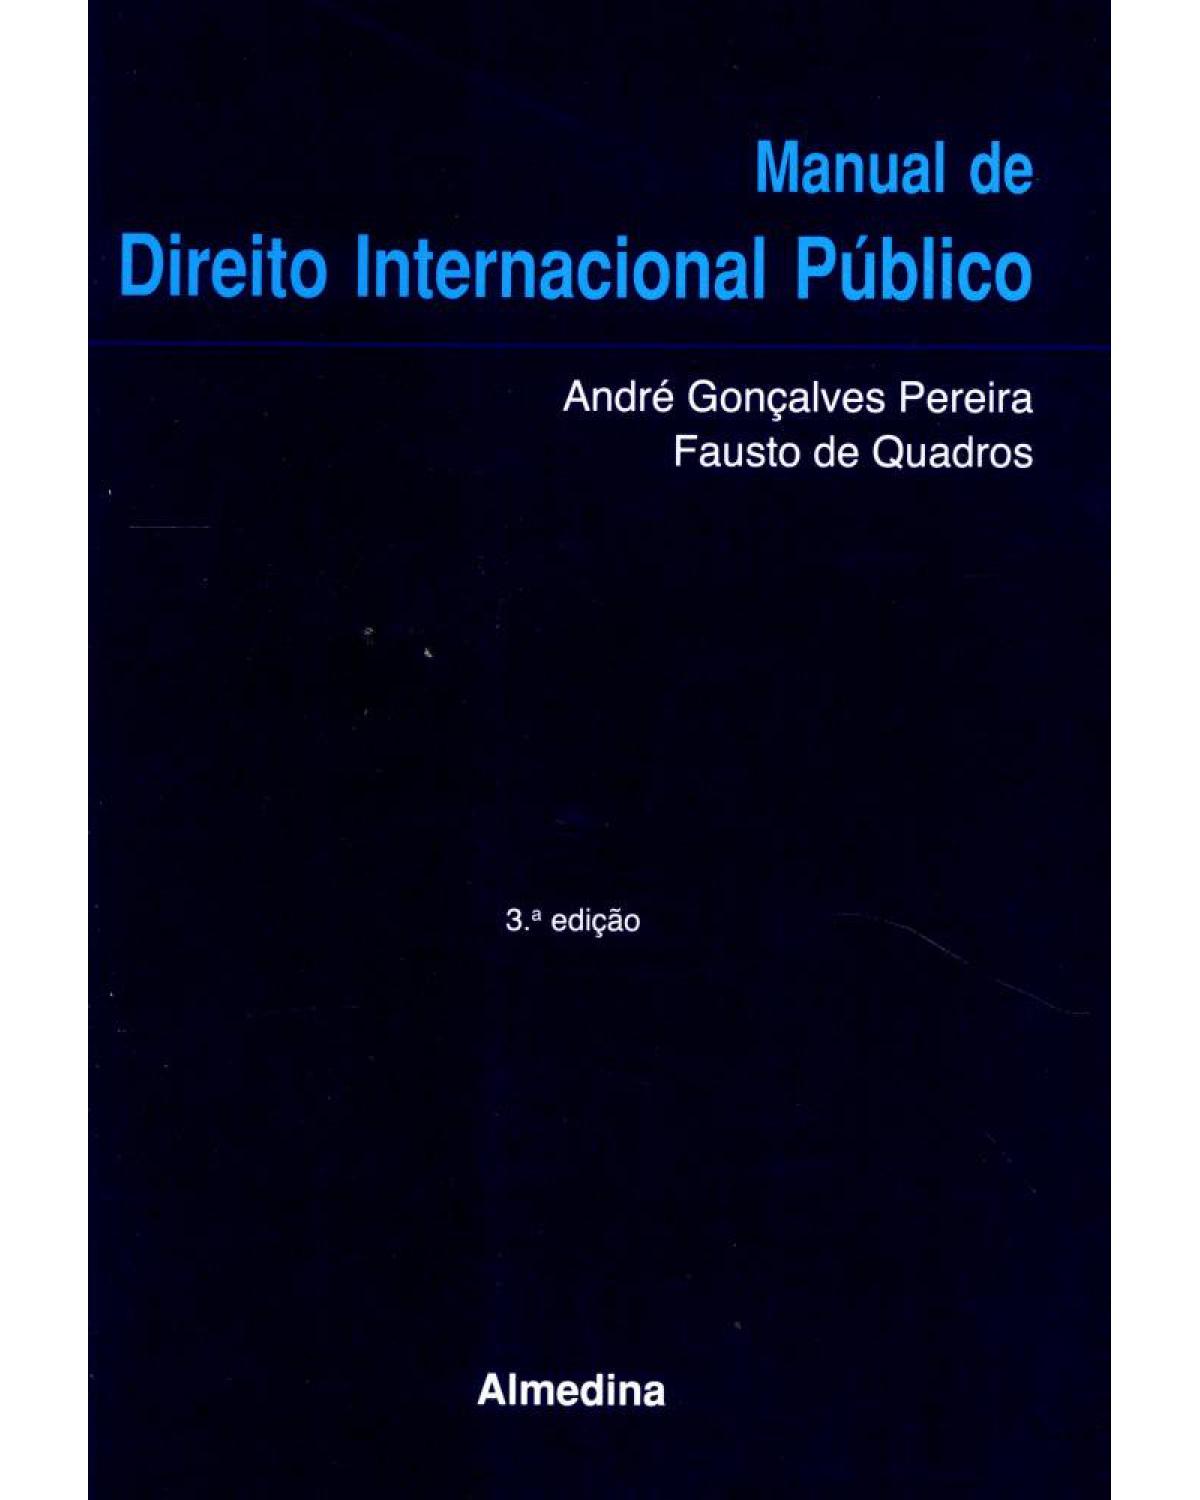 Manual de direito internacional público - 3ª Edição | 2007